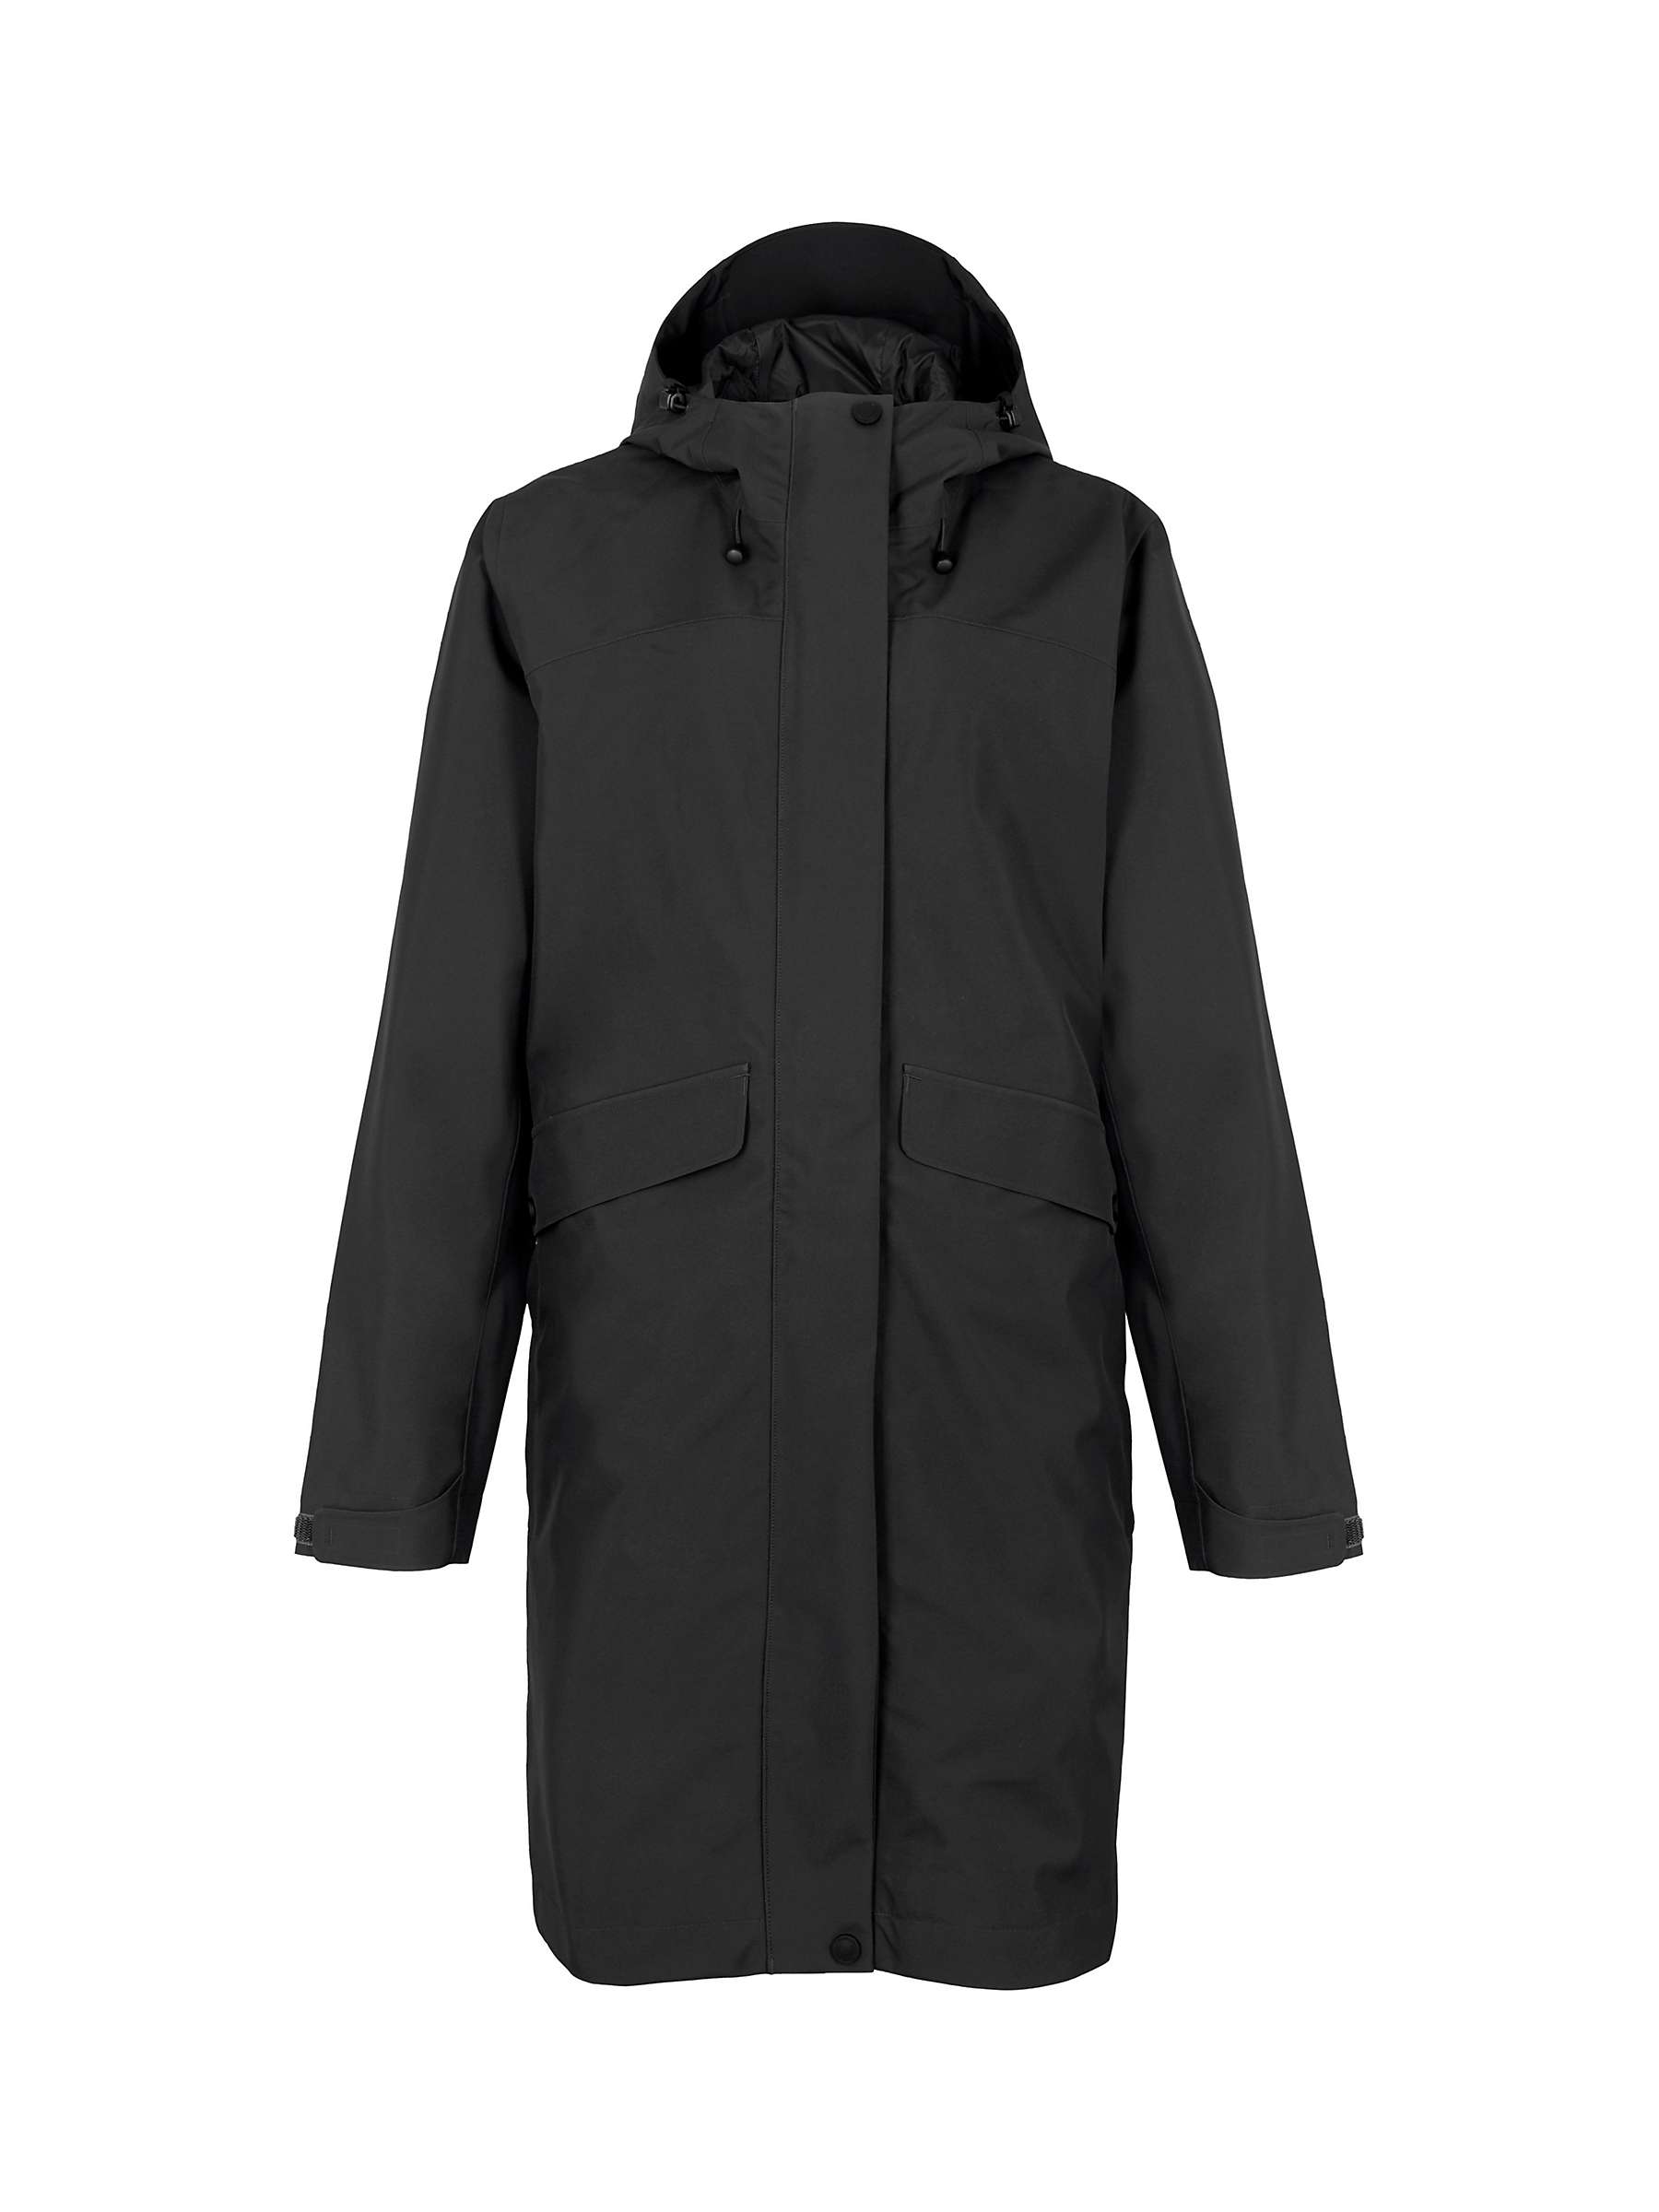 Buy Rohan Kendal Waterproof Jacket, Black Online at johnlewis.com